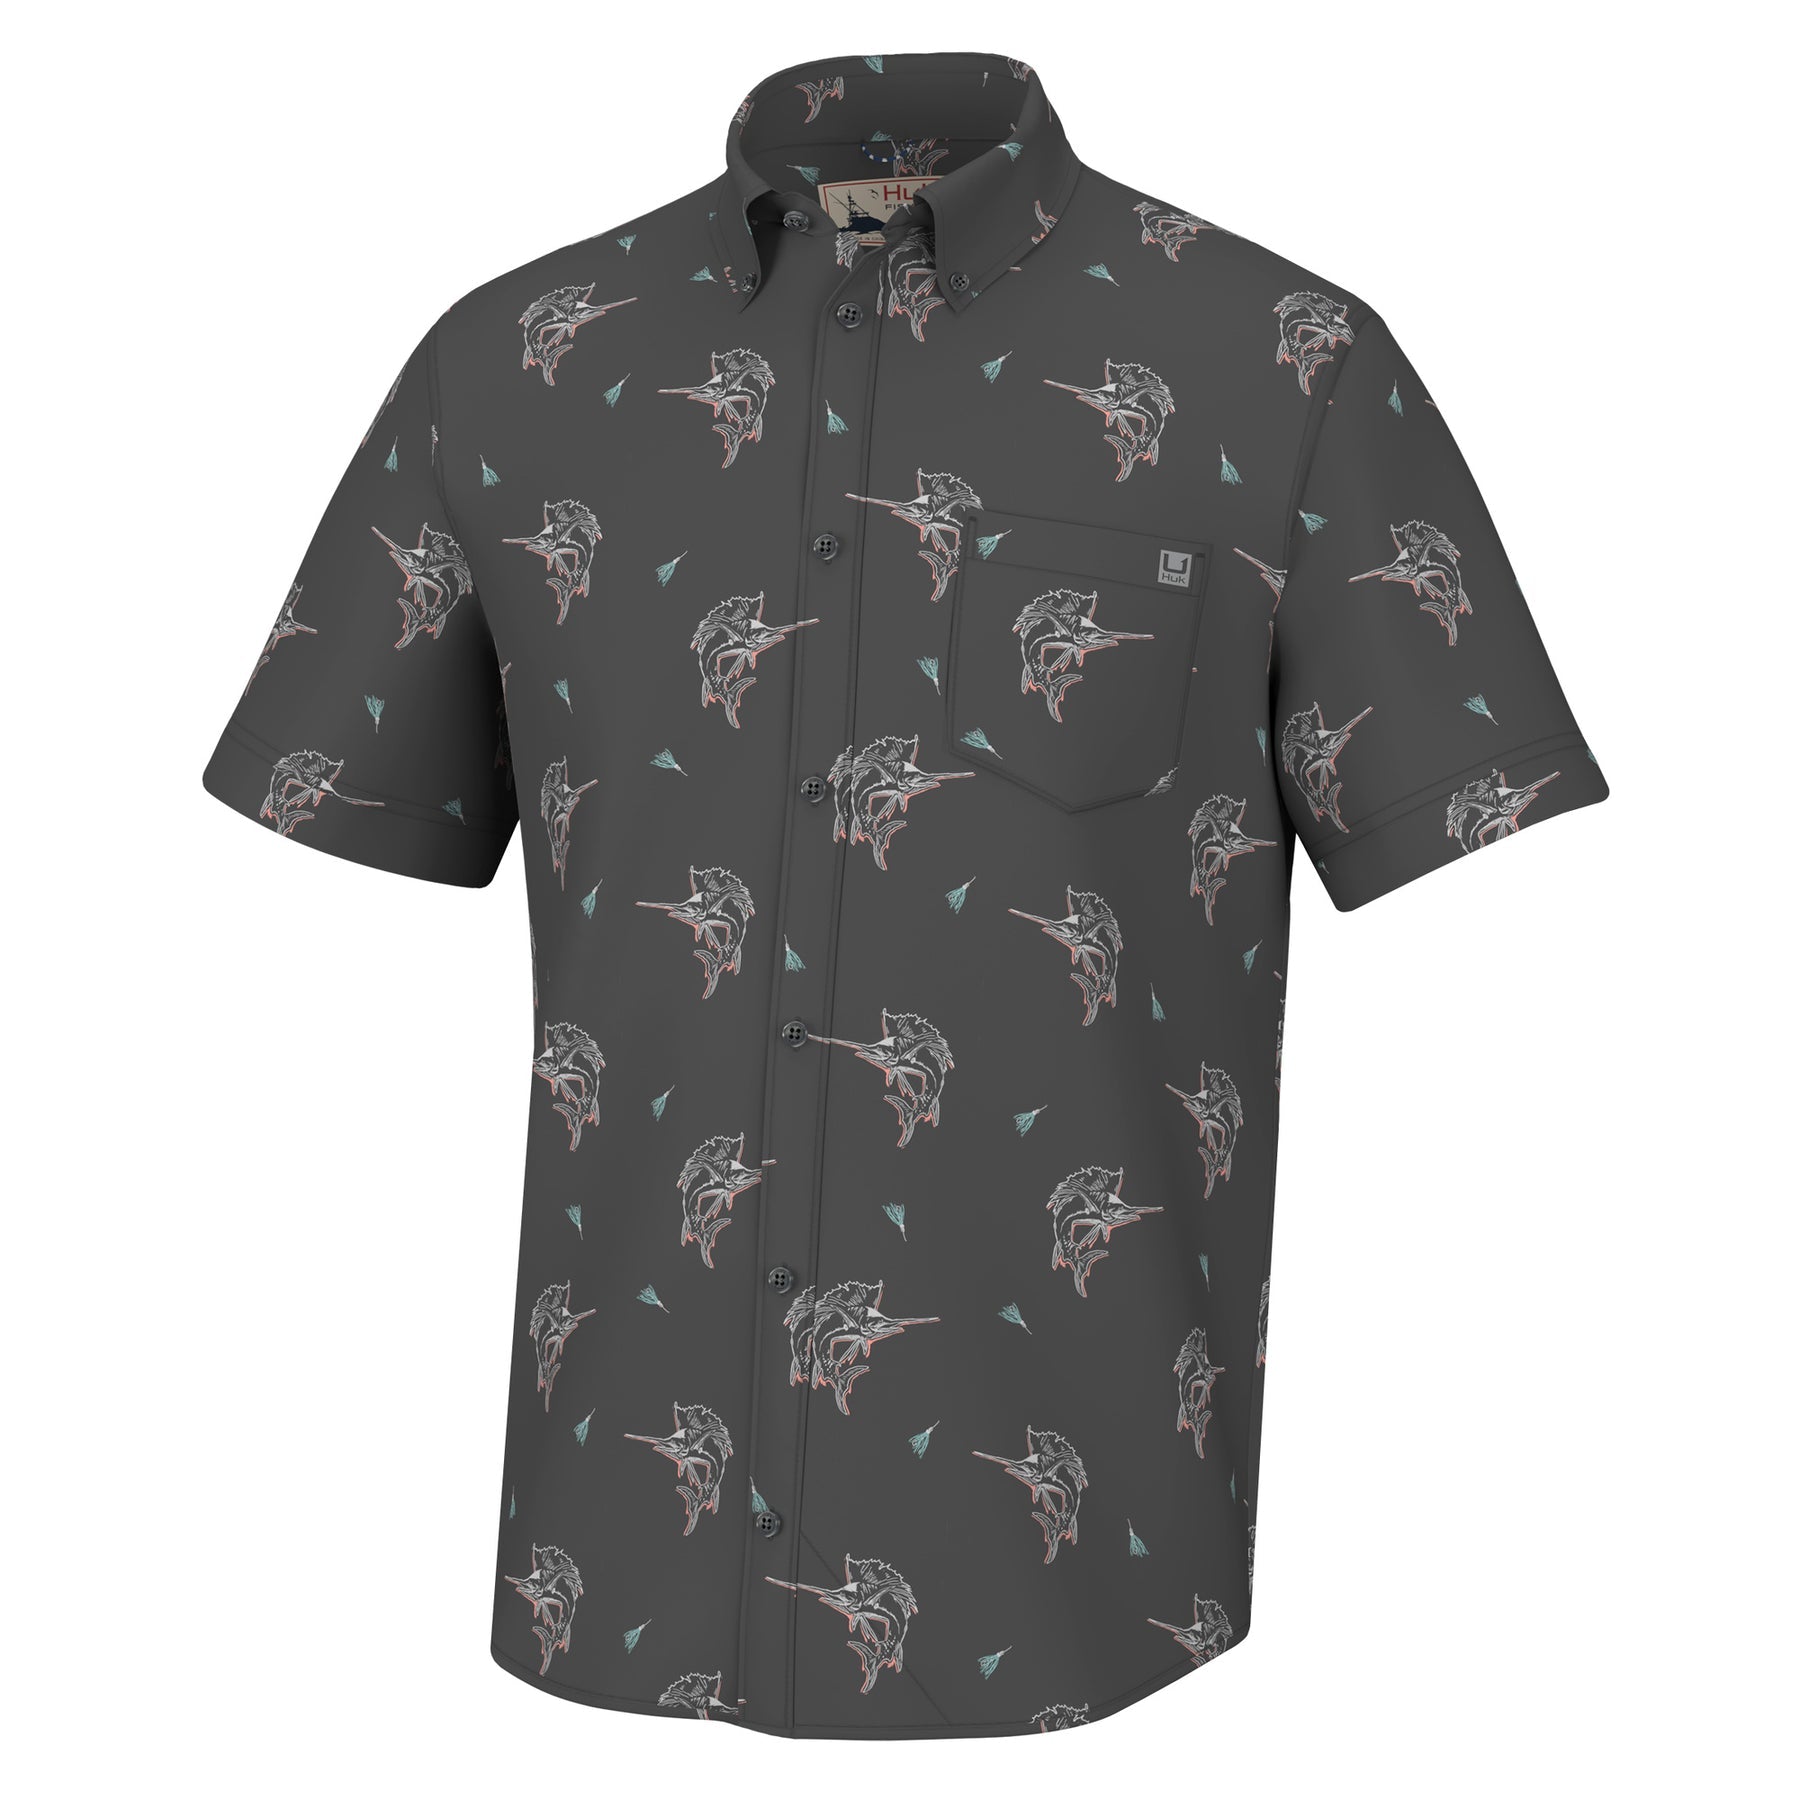 HUK Kona Button-Down Shirt - Fin Lure Volcanic Ash